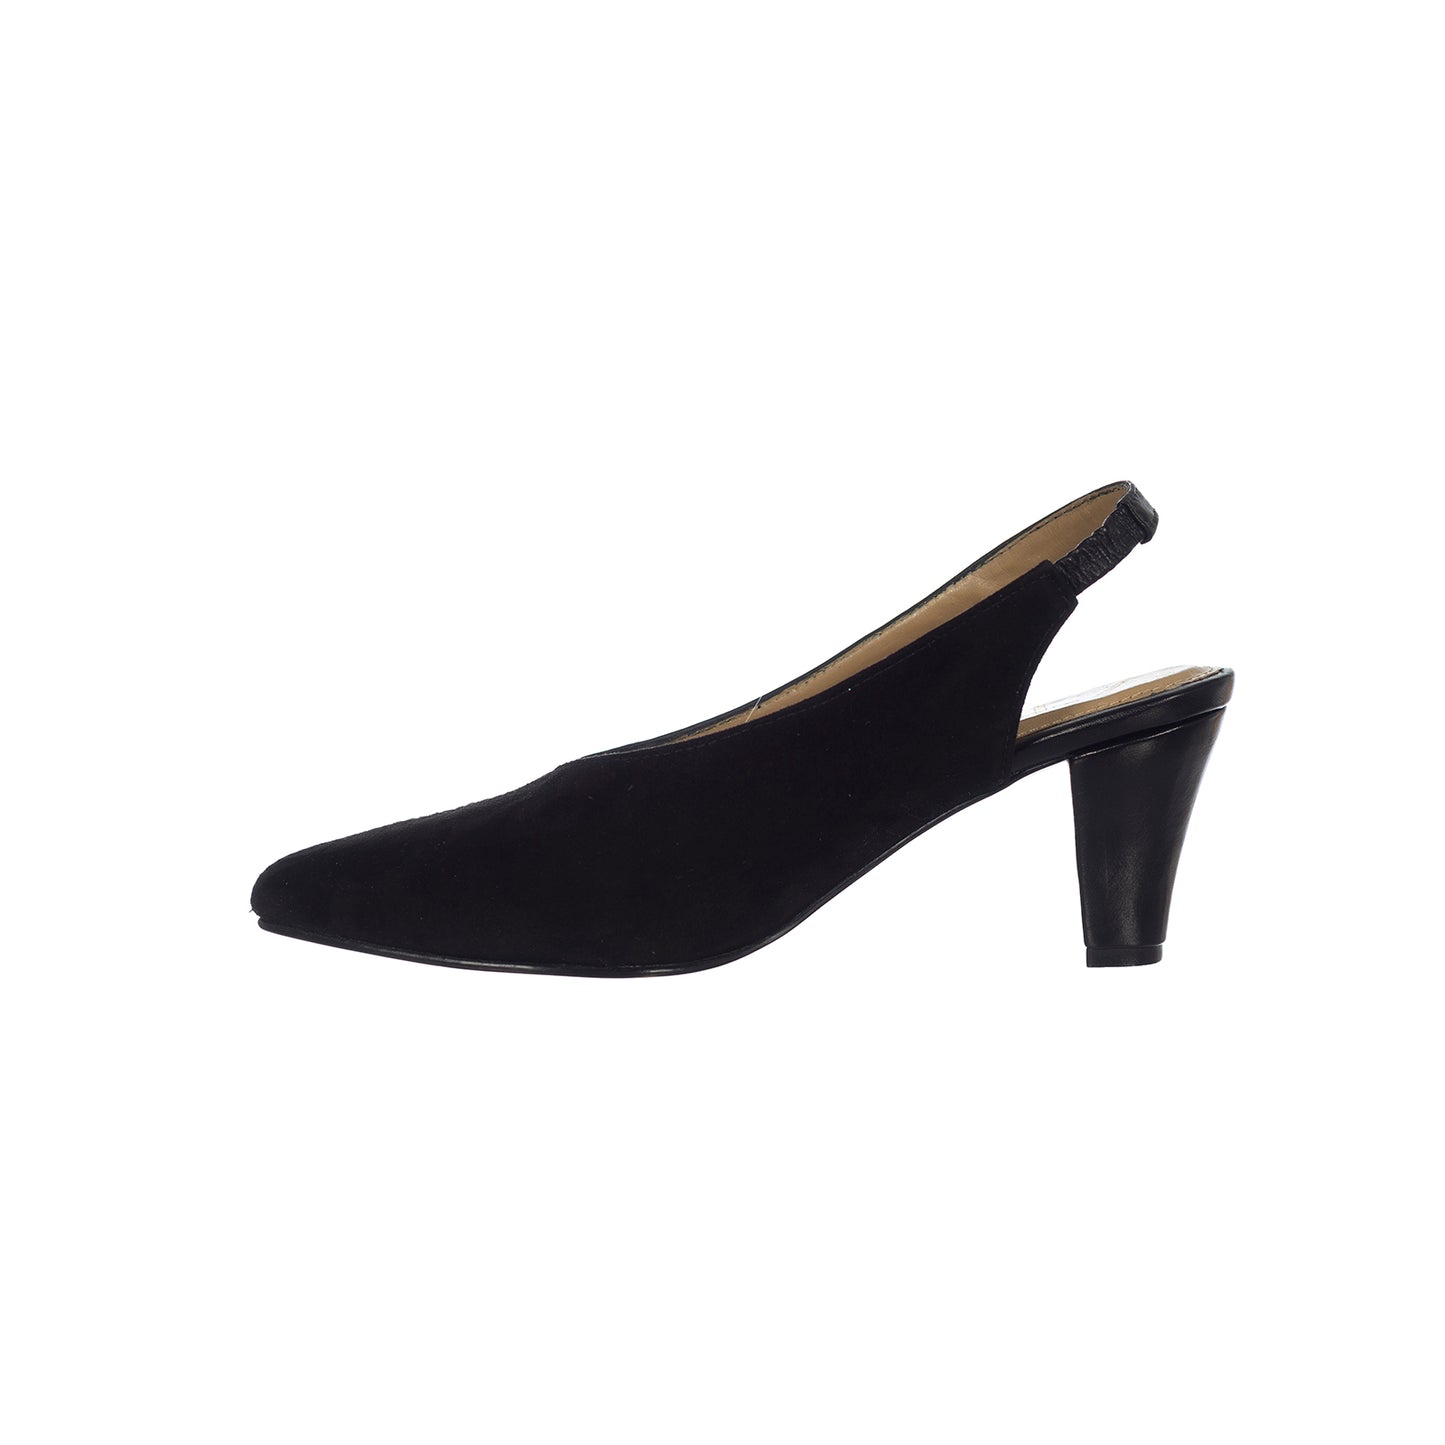 Comet heels - Size 38